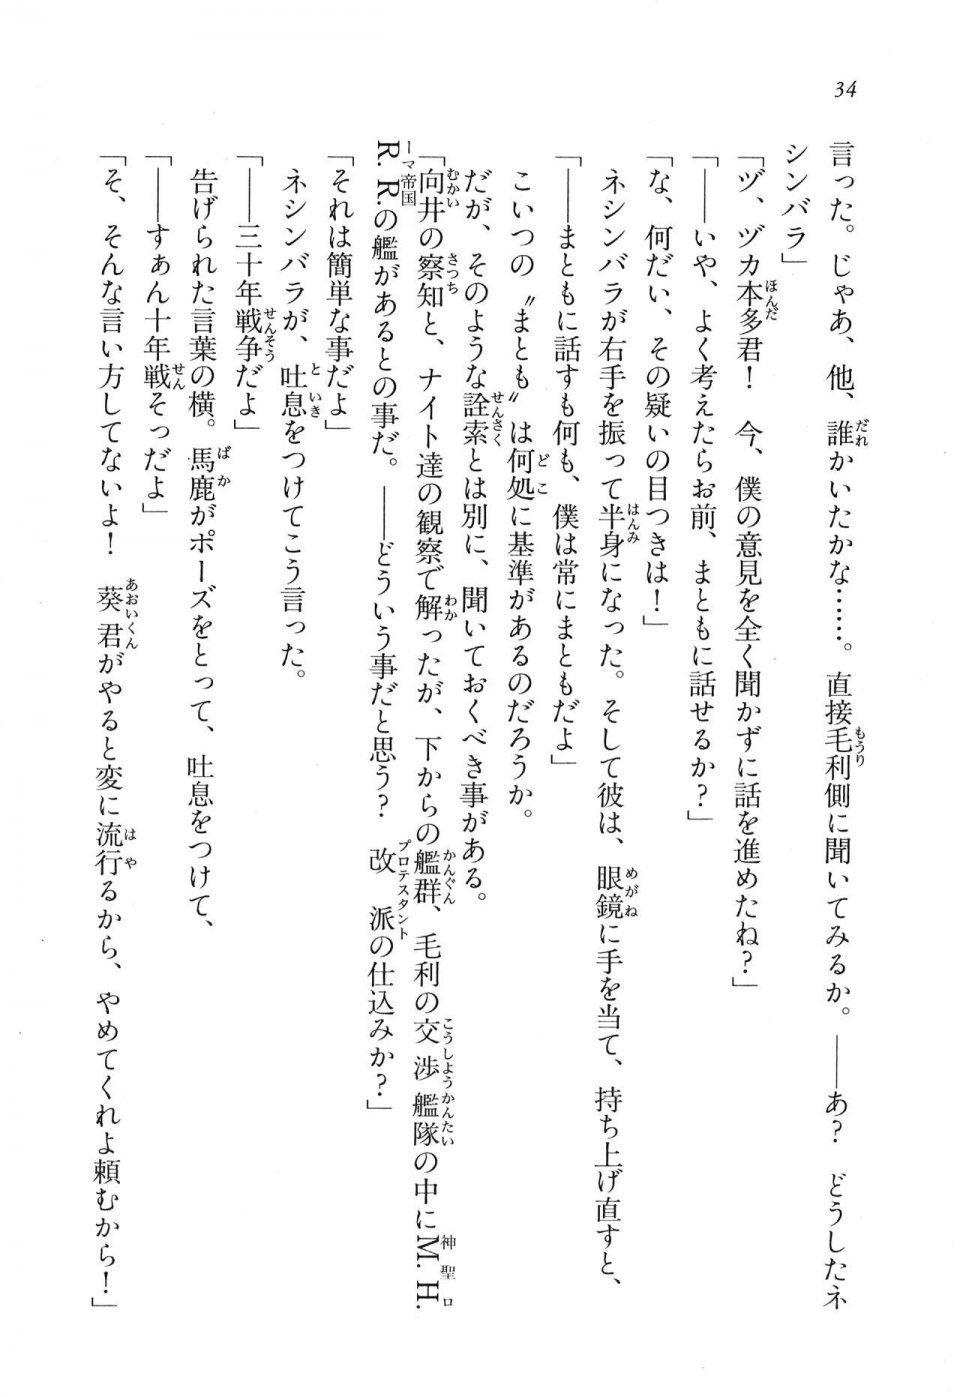 Kyoukai Senjou no Horizon LN Vol 16(7A) - Photo #34